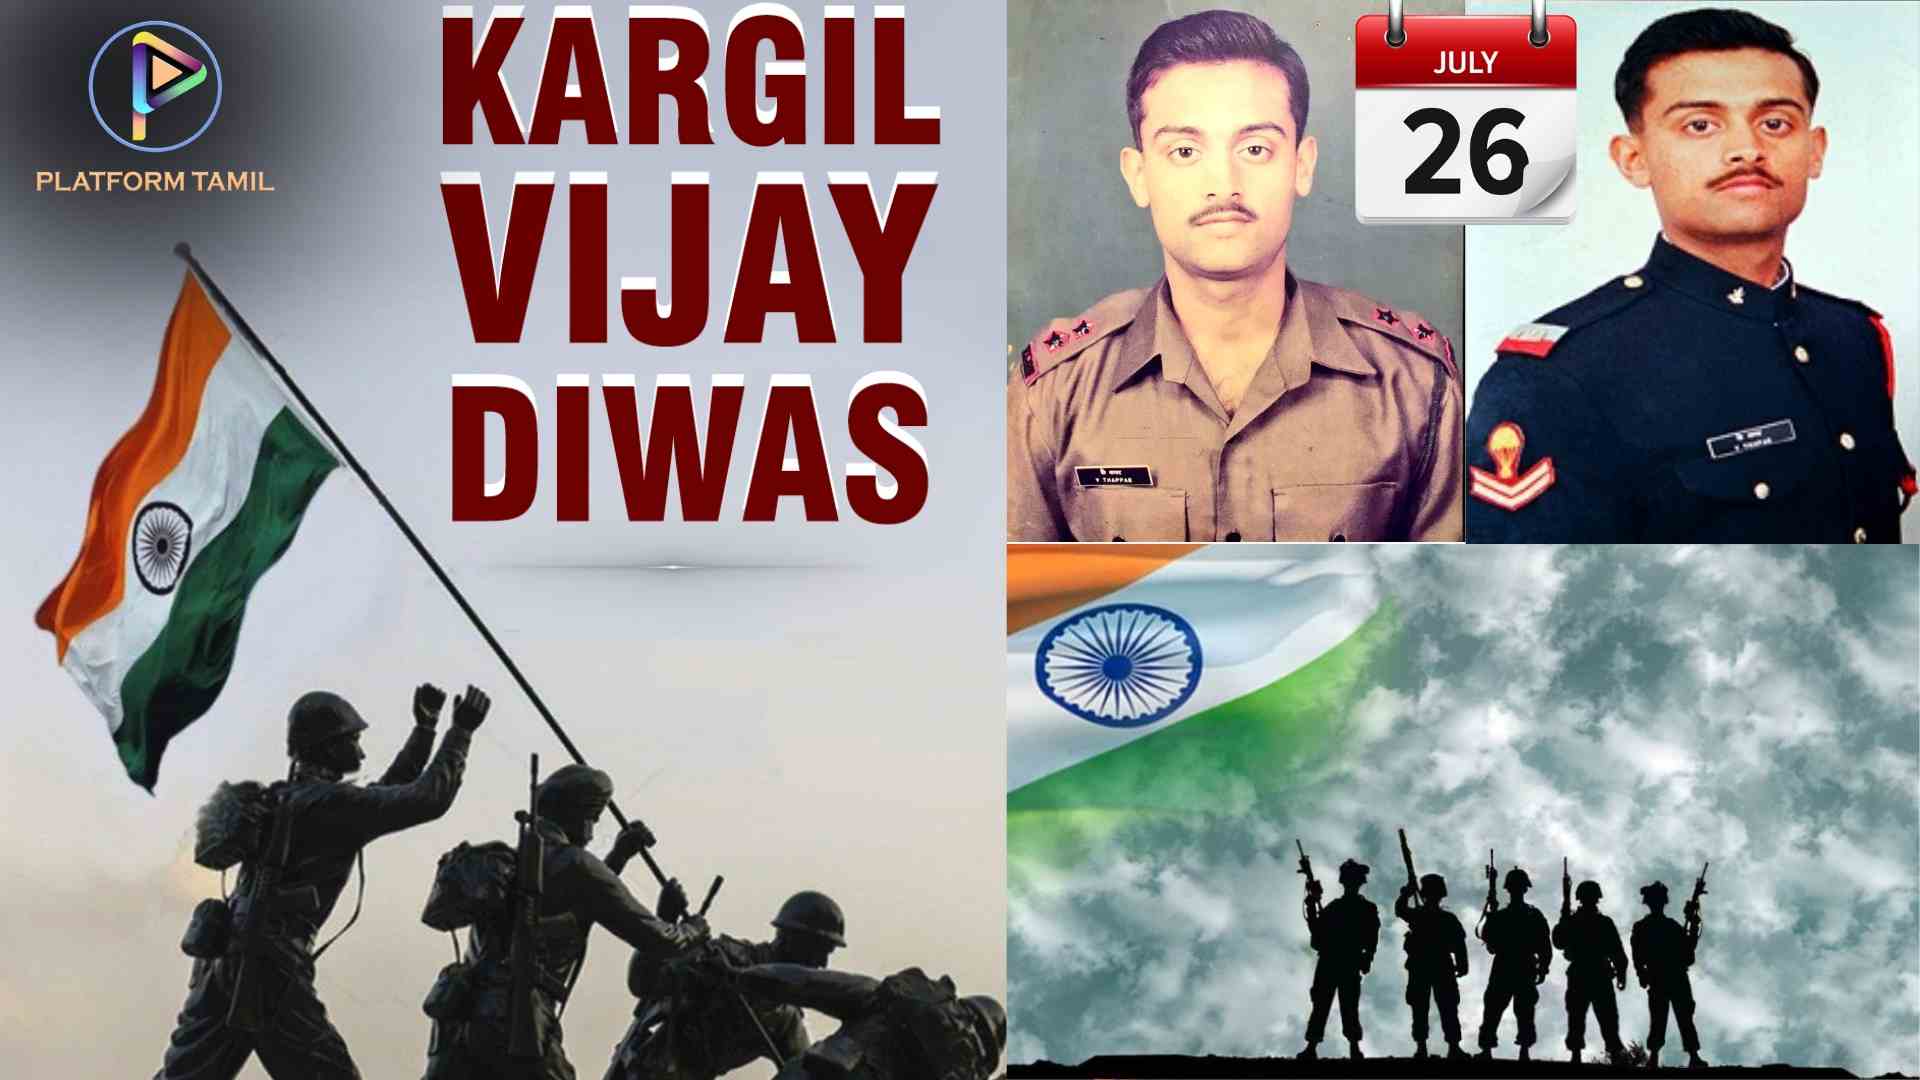 Kargil Vijay Diwas - Platform Tamil